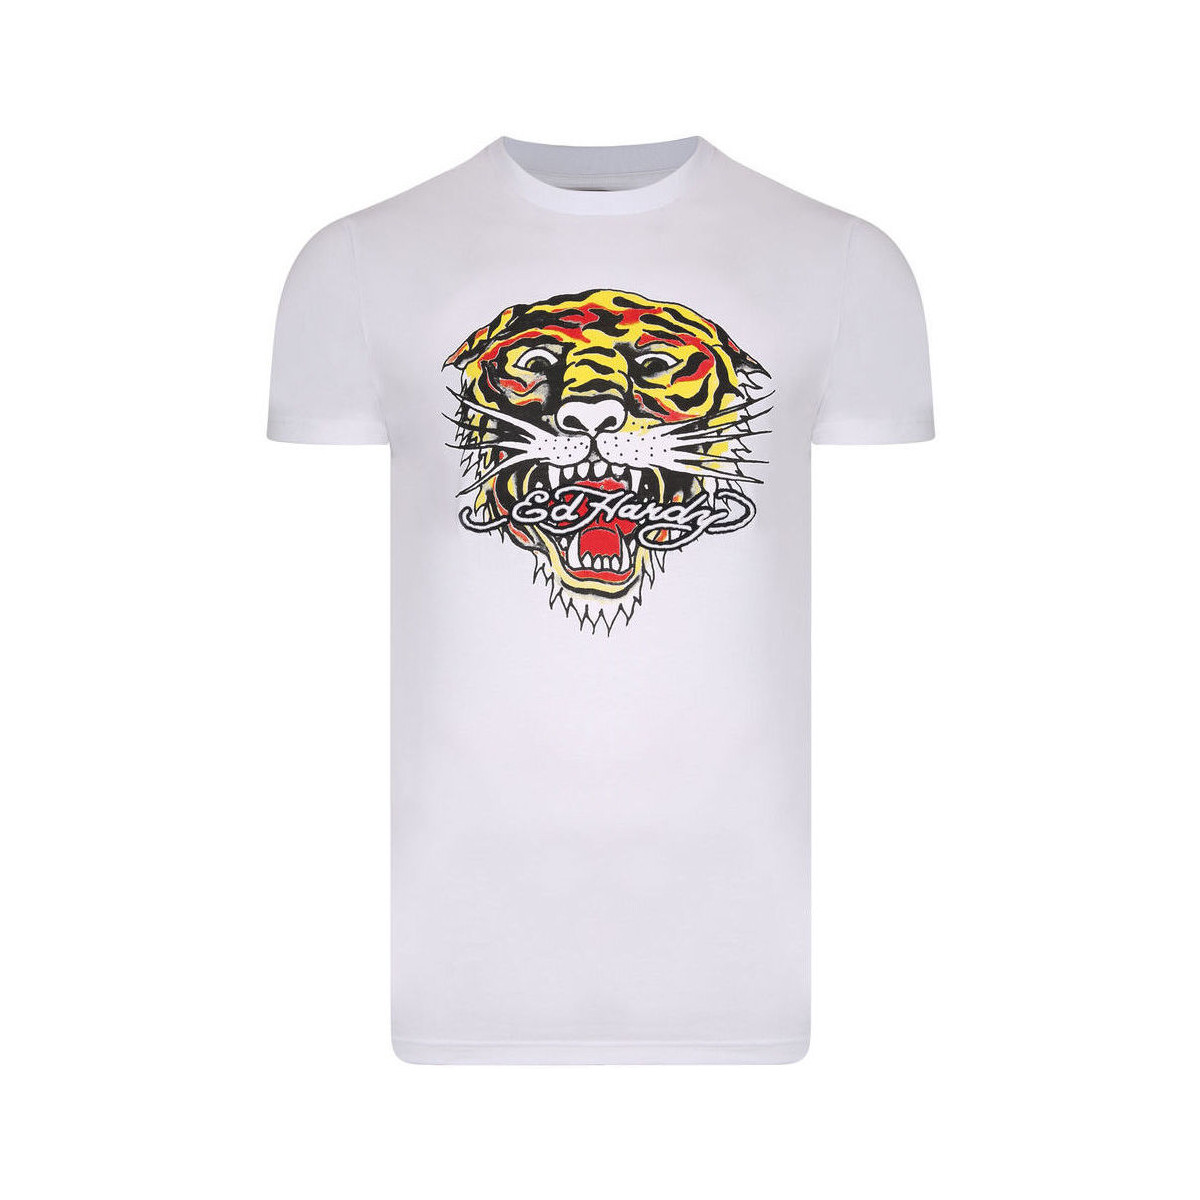 Textil Muži Trička s krátkým rukávem Ed Hardy Tiger mouth graphic t-shirt white Bílá